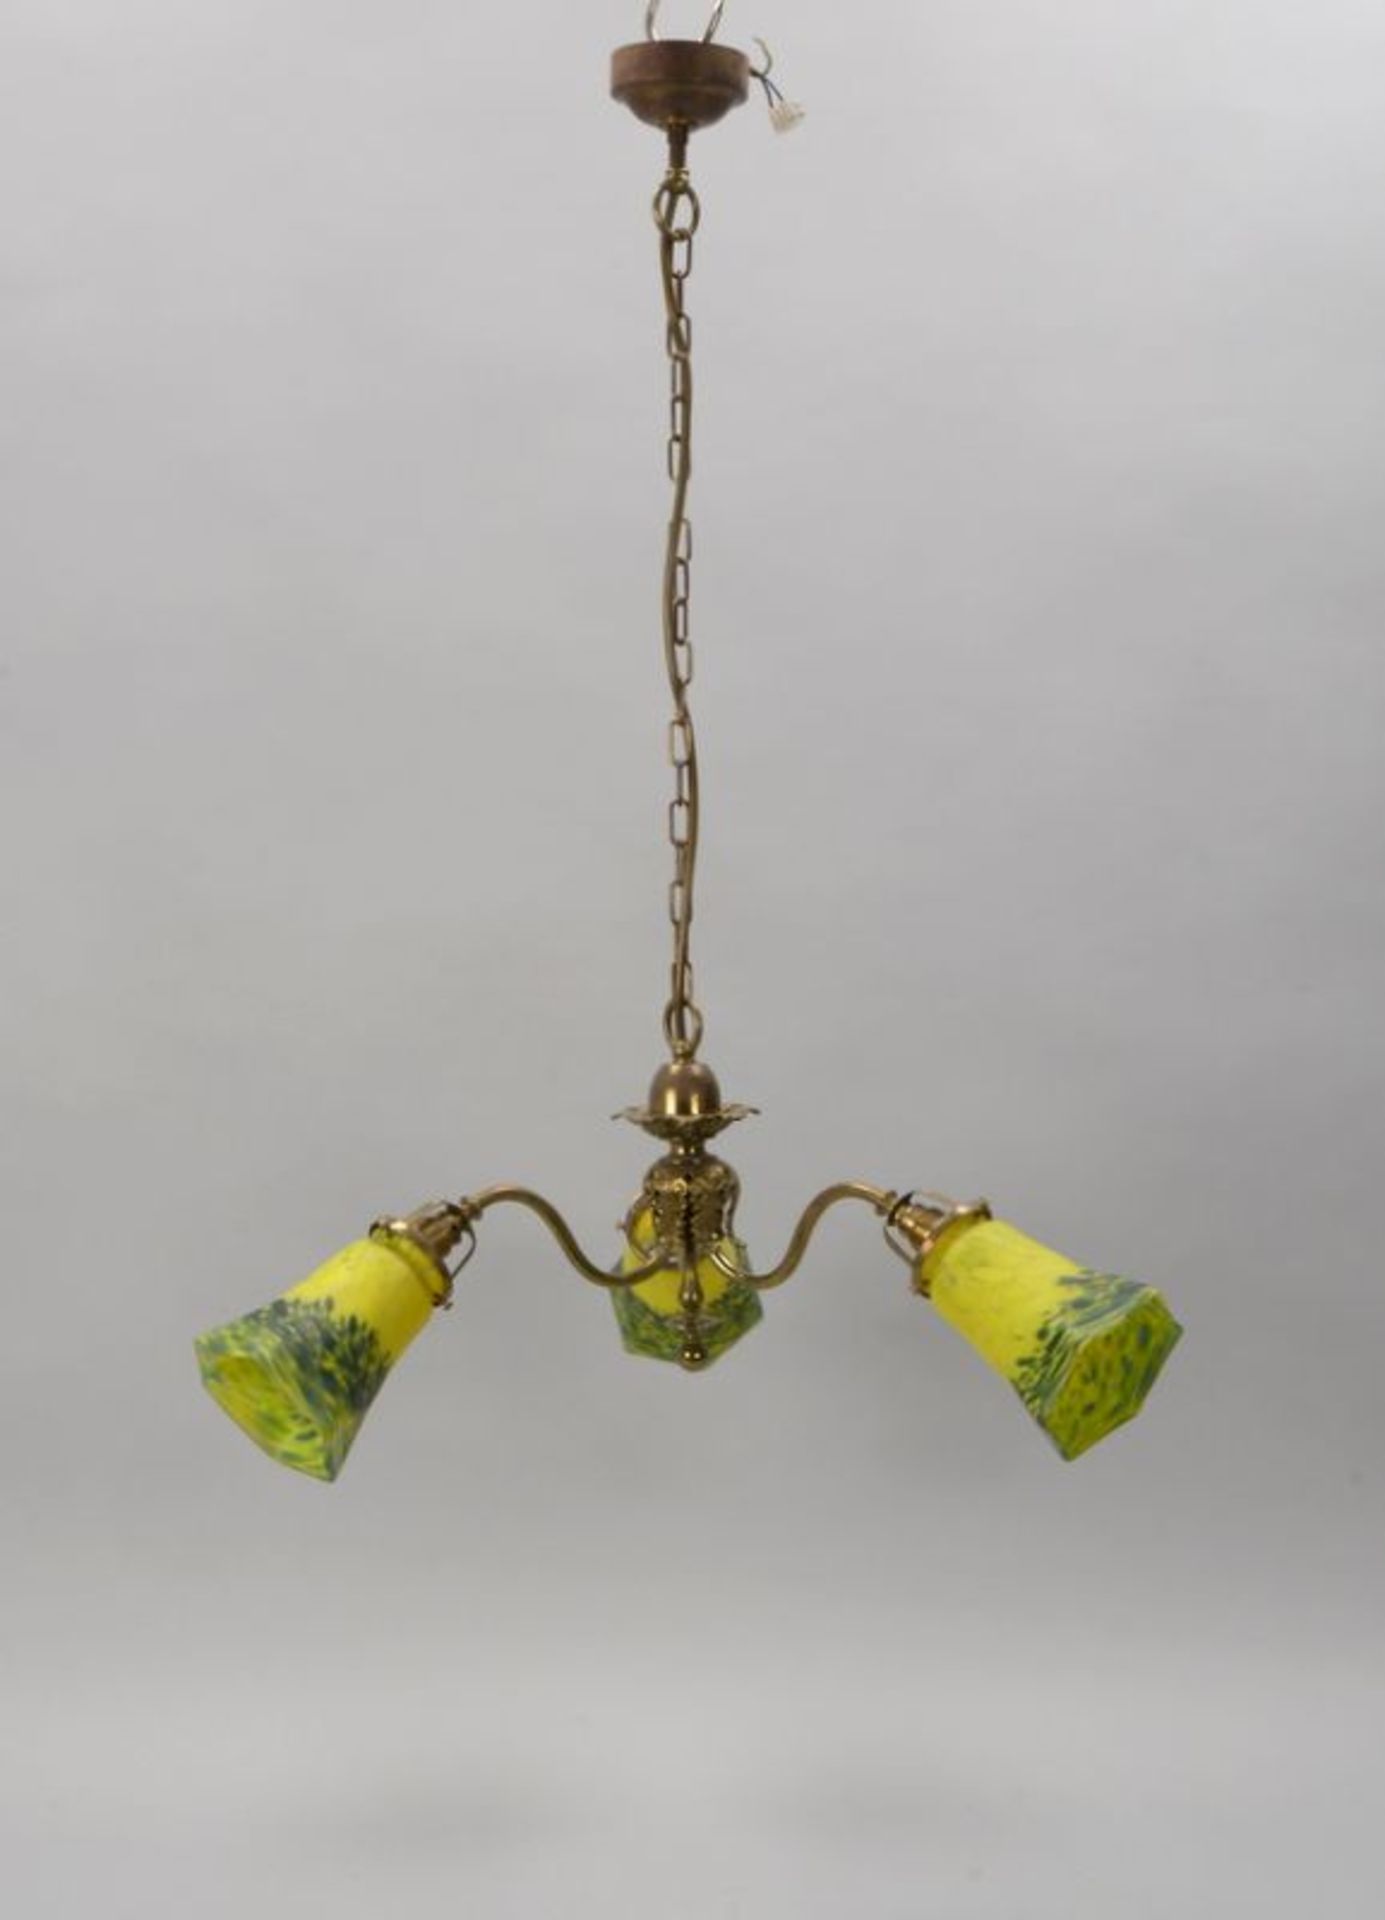 Deckenlampe, 3-armig, Messinggestell, mit bl&uuml;tenf&ouml;rmigen Glasschirmen; H&ouml;he 85 cm, Du - Bild 2 aus 2